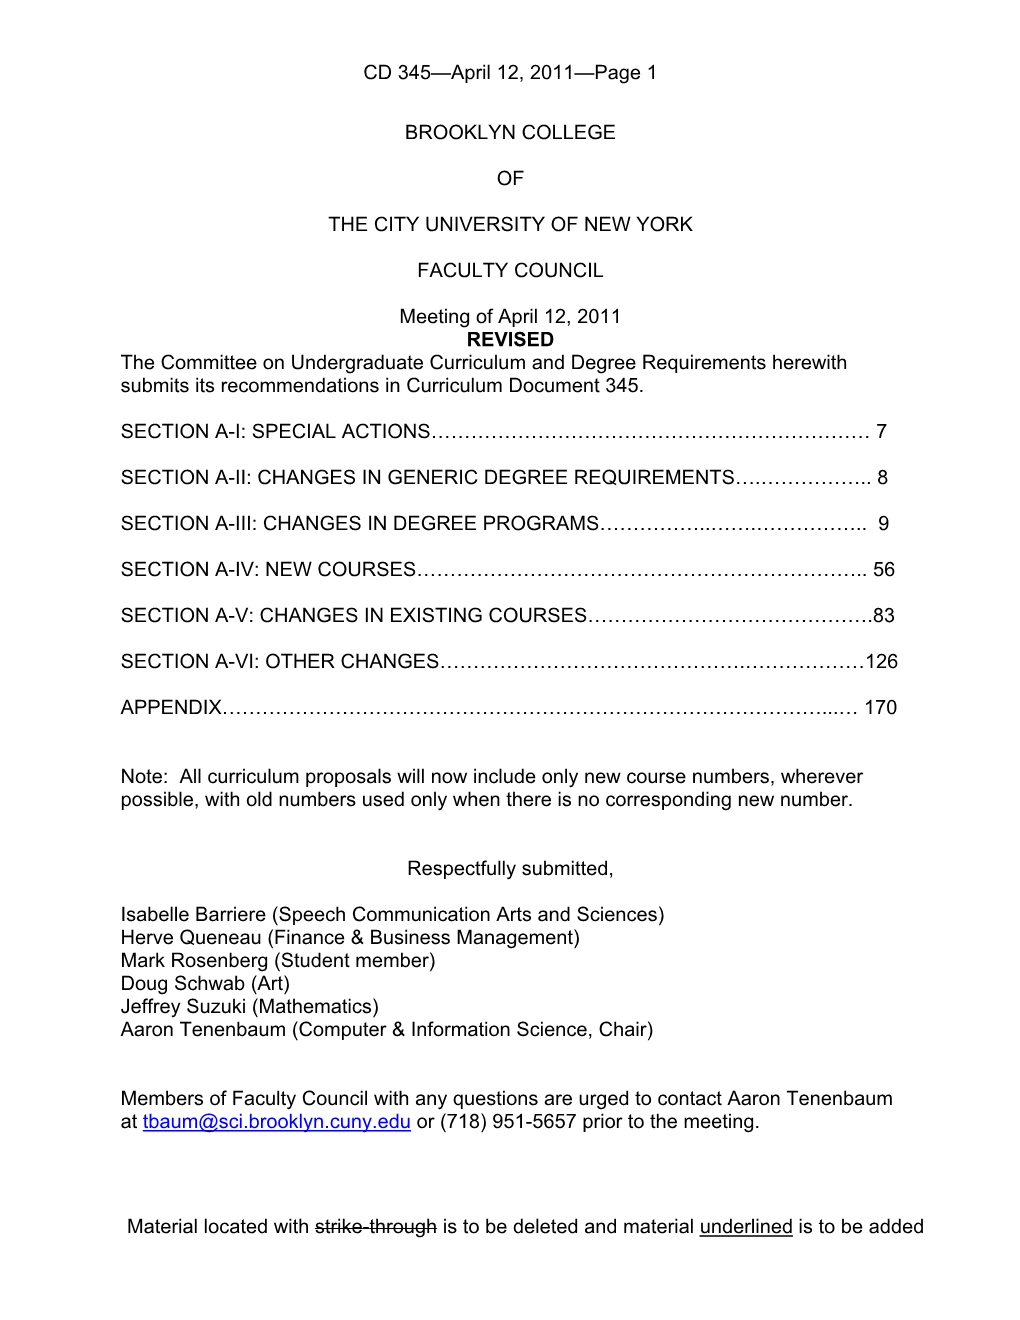 Curriculum Document 345 April 12, 2011